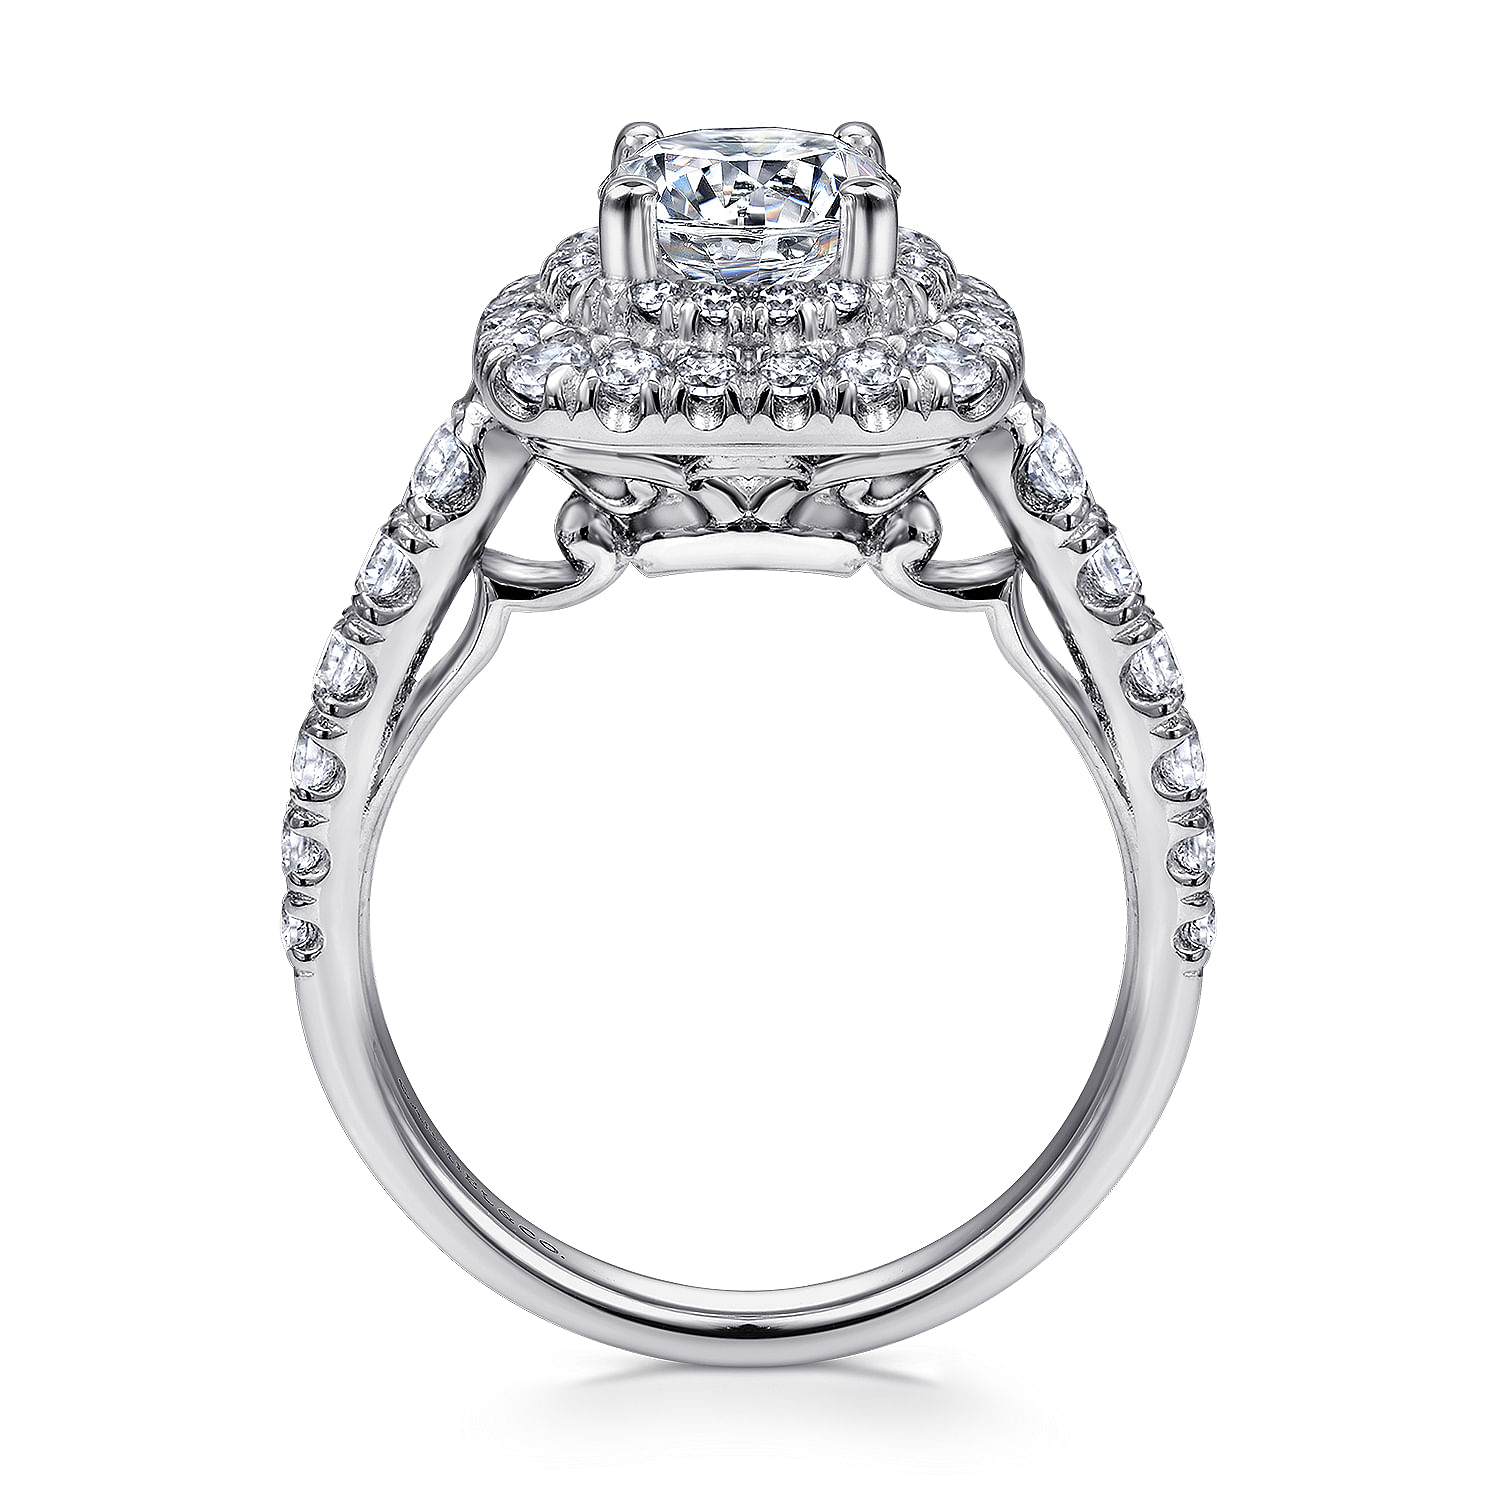 14k White Gold Cushion Double Halo Round Diamond Engagement Ring